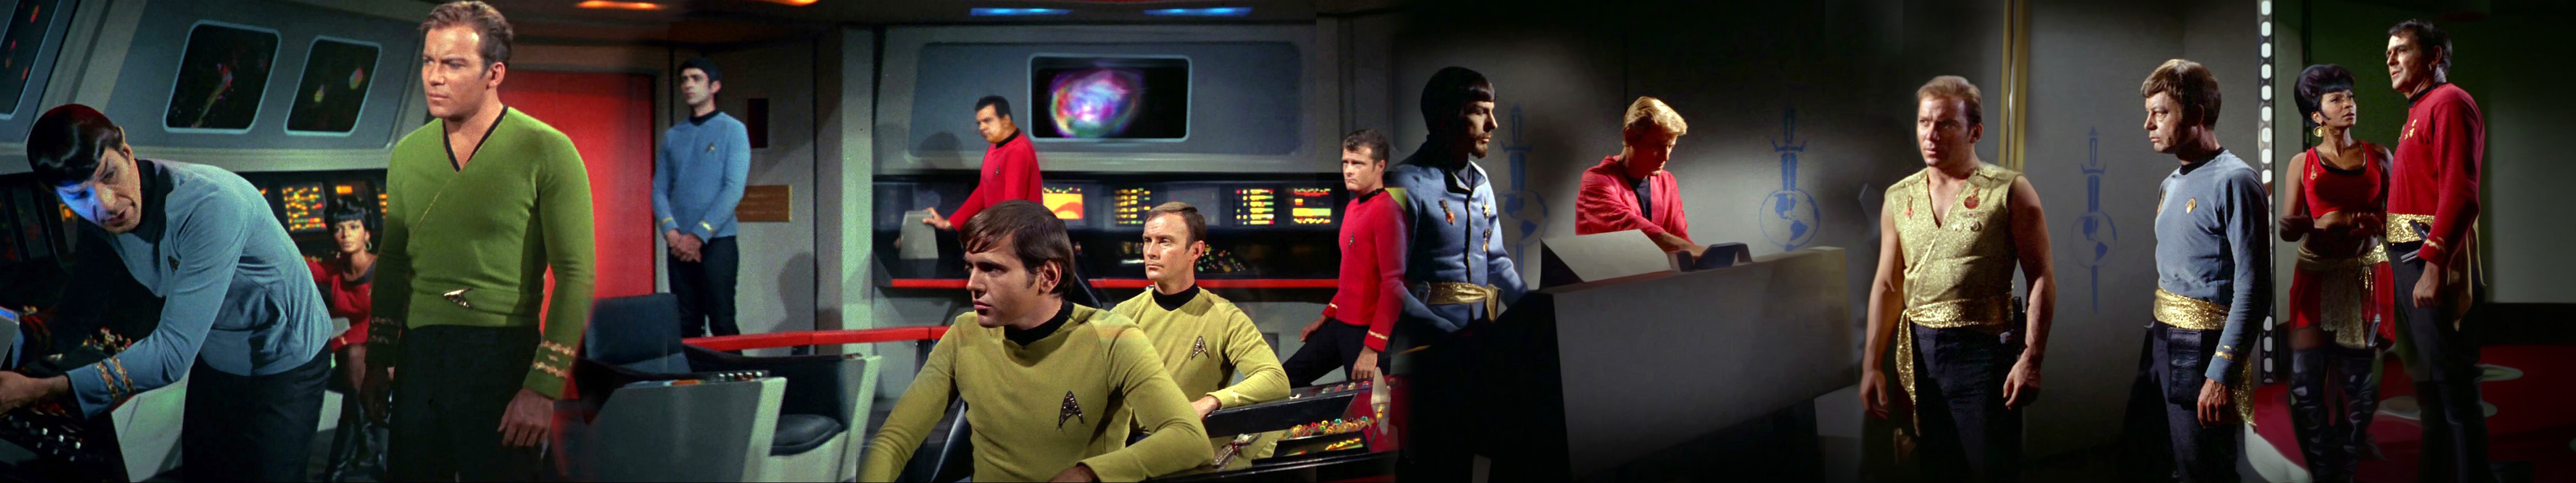 Star Trek Desktop Background Wallpaper By Mecandes On